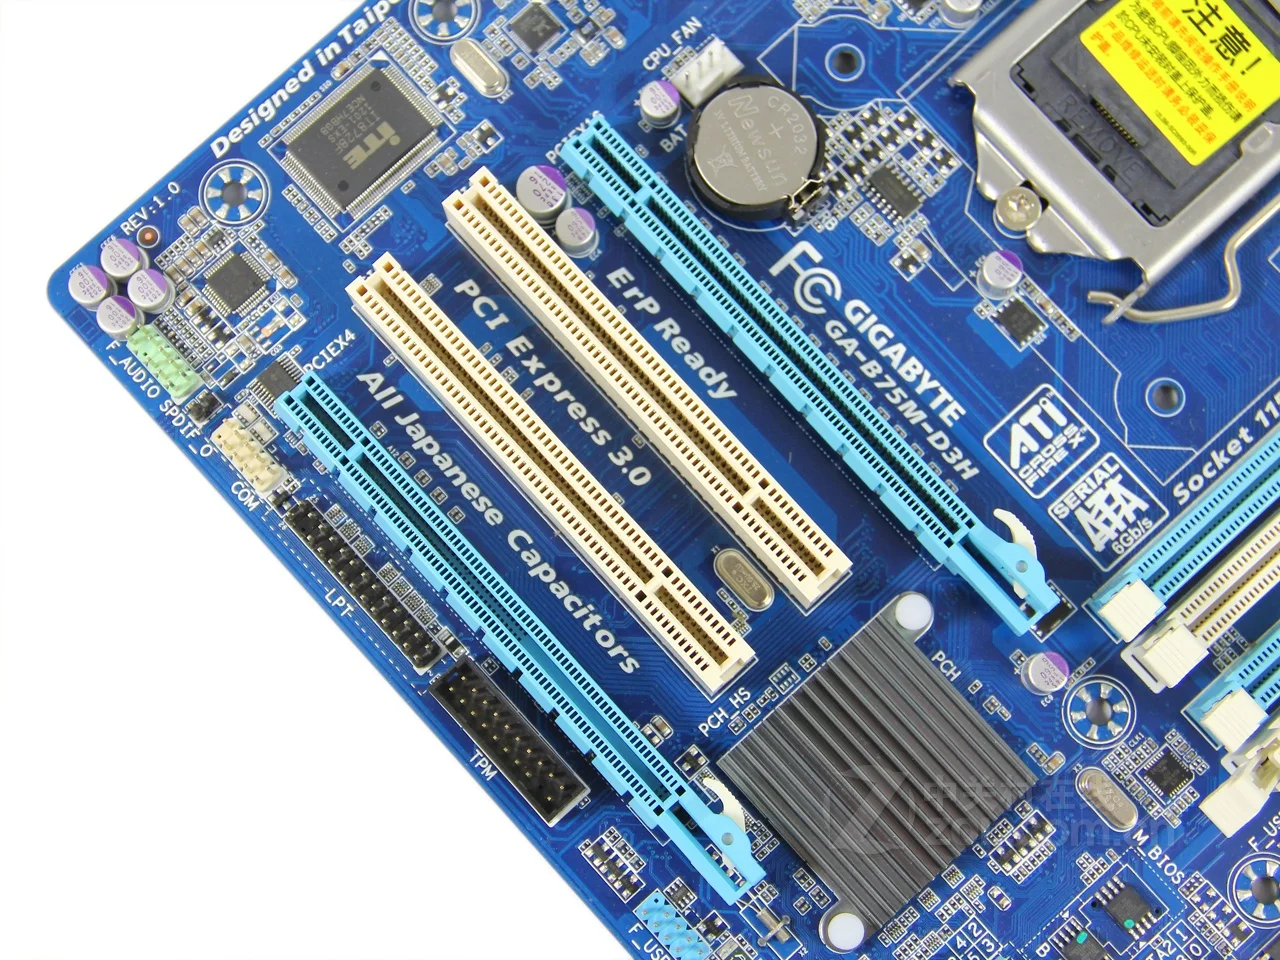 Оригинальная Материнская плата Gigabyte GA-B75M-D3H LGA 1155 DDR3 ram 32G B75 B75M D3H настольная материнская плата B75M-D3H DVI VGA HDMI USB3 б/у